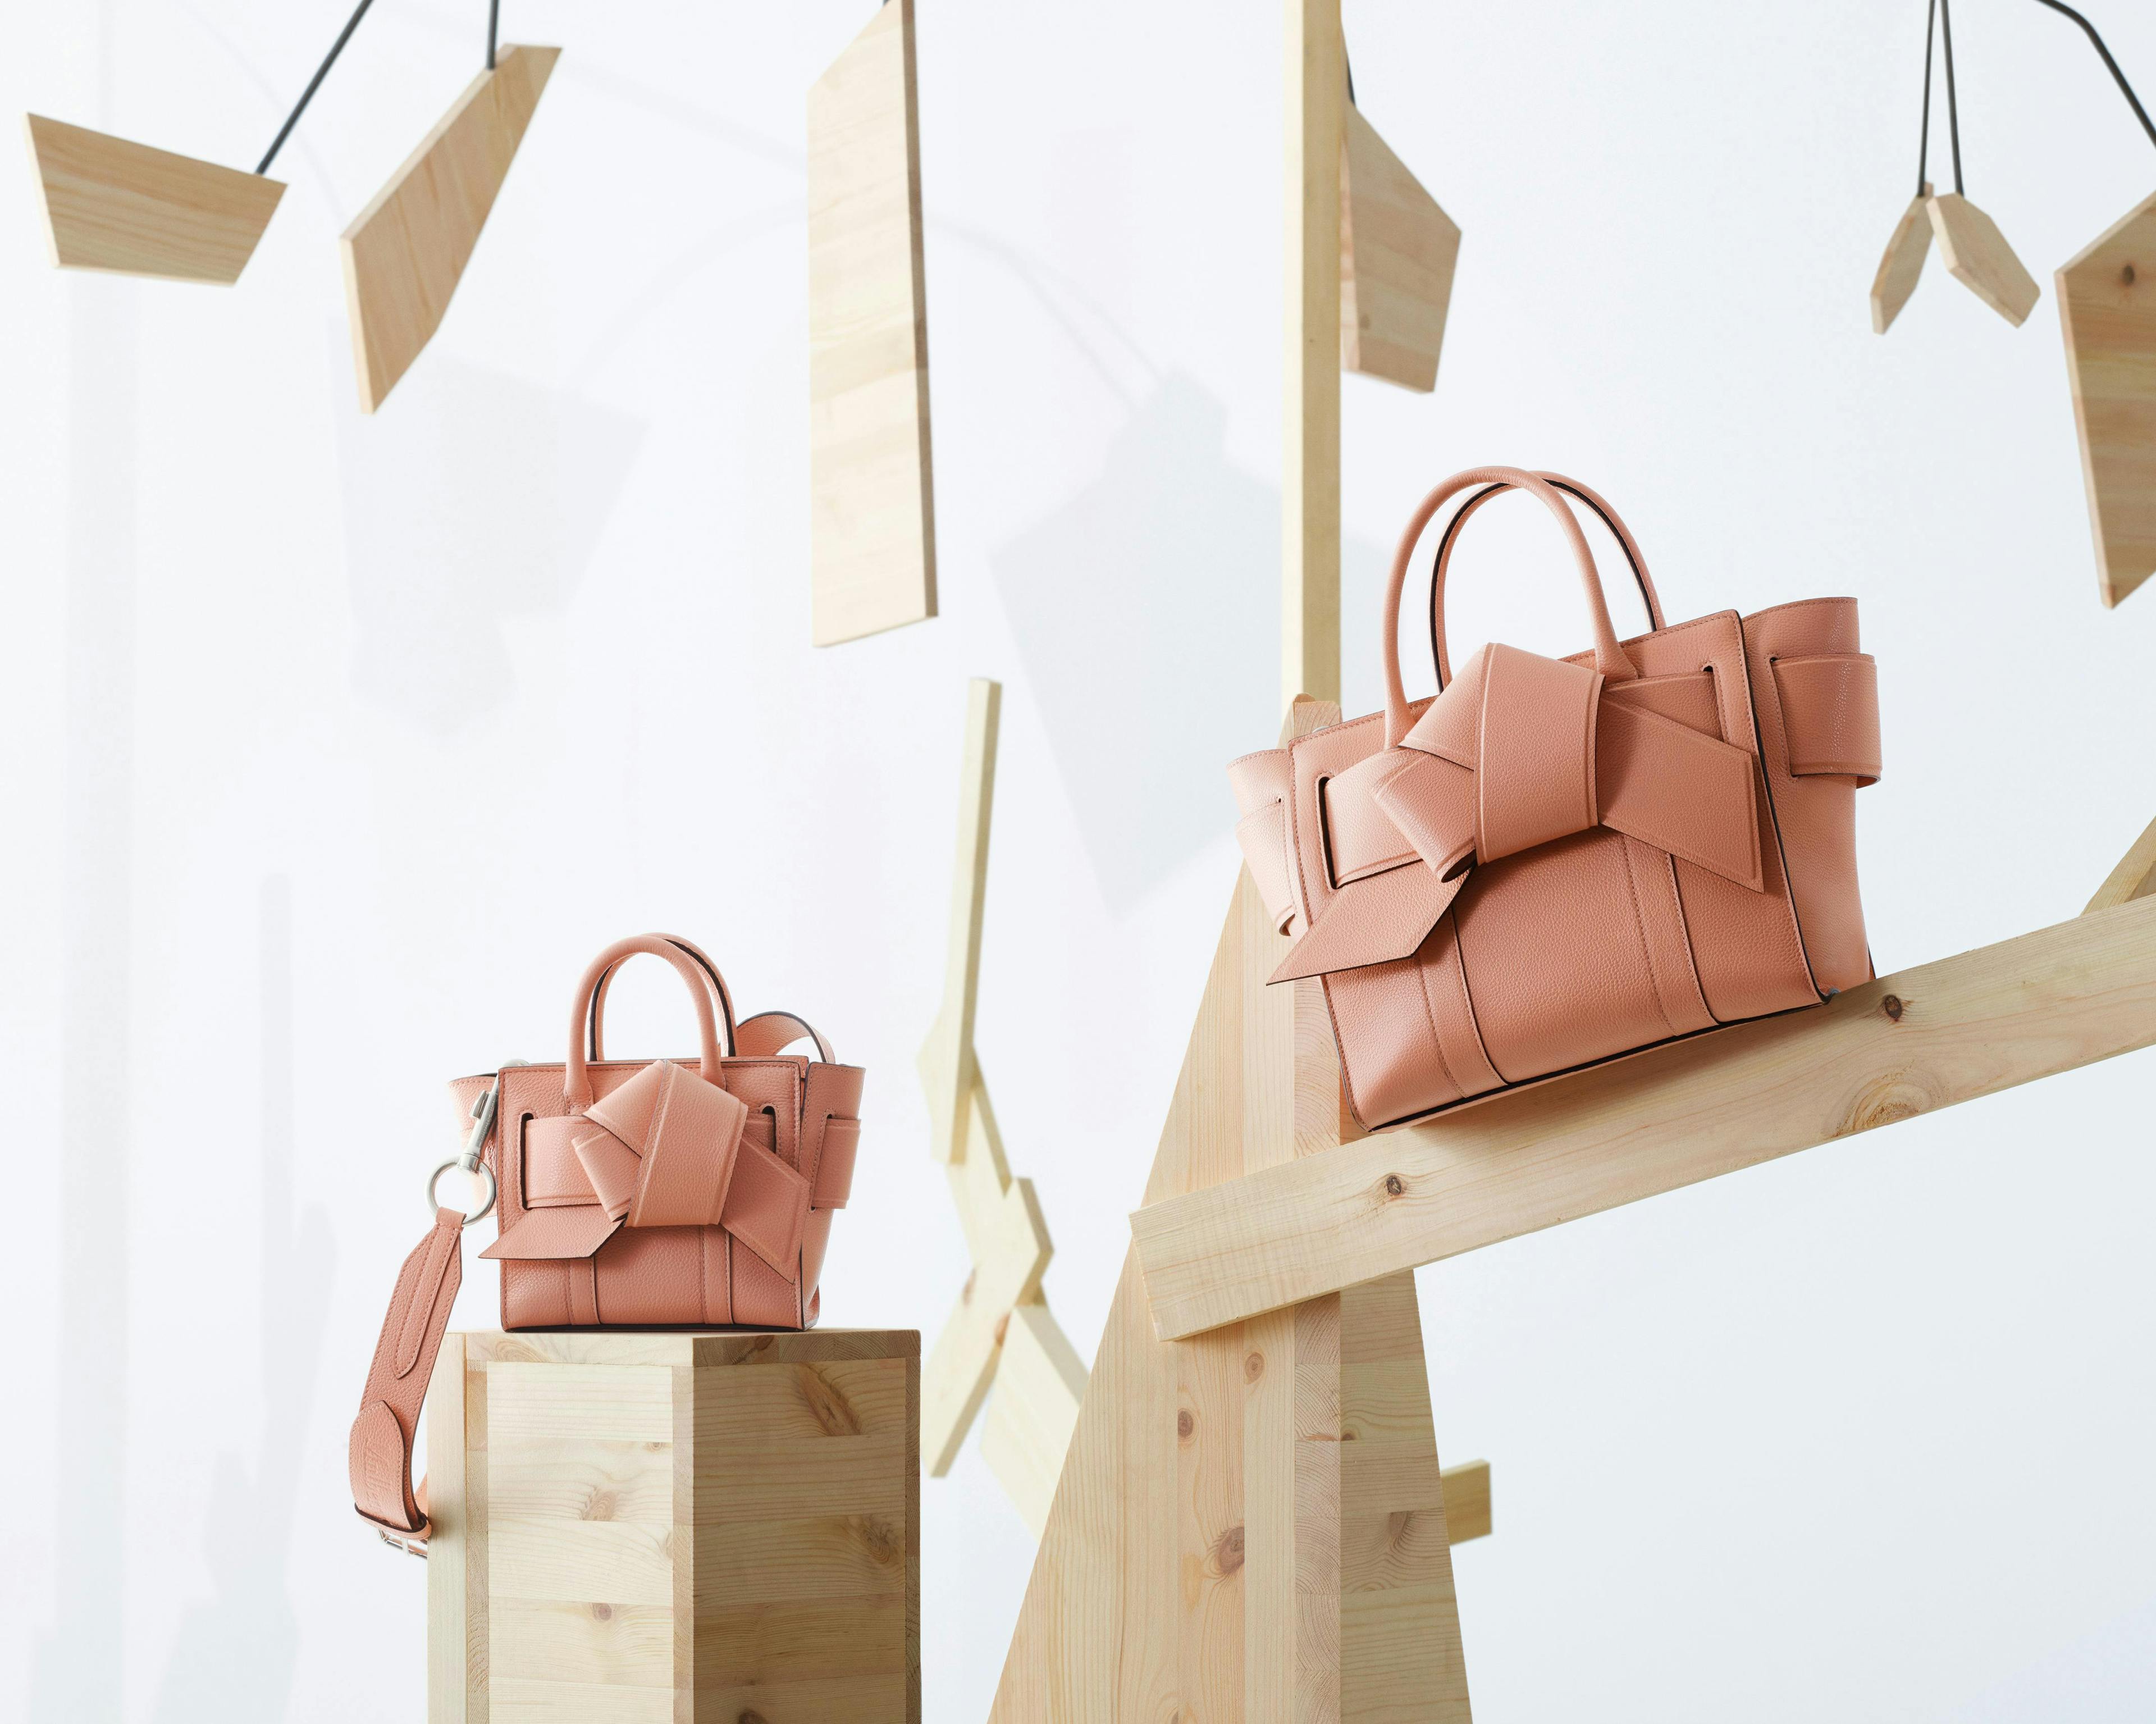 bag accessories accessory handbag wood